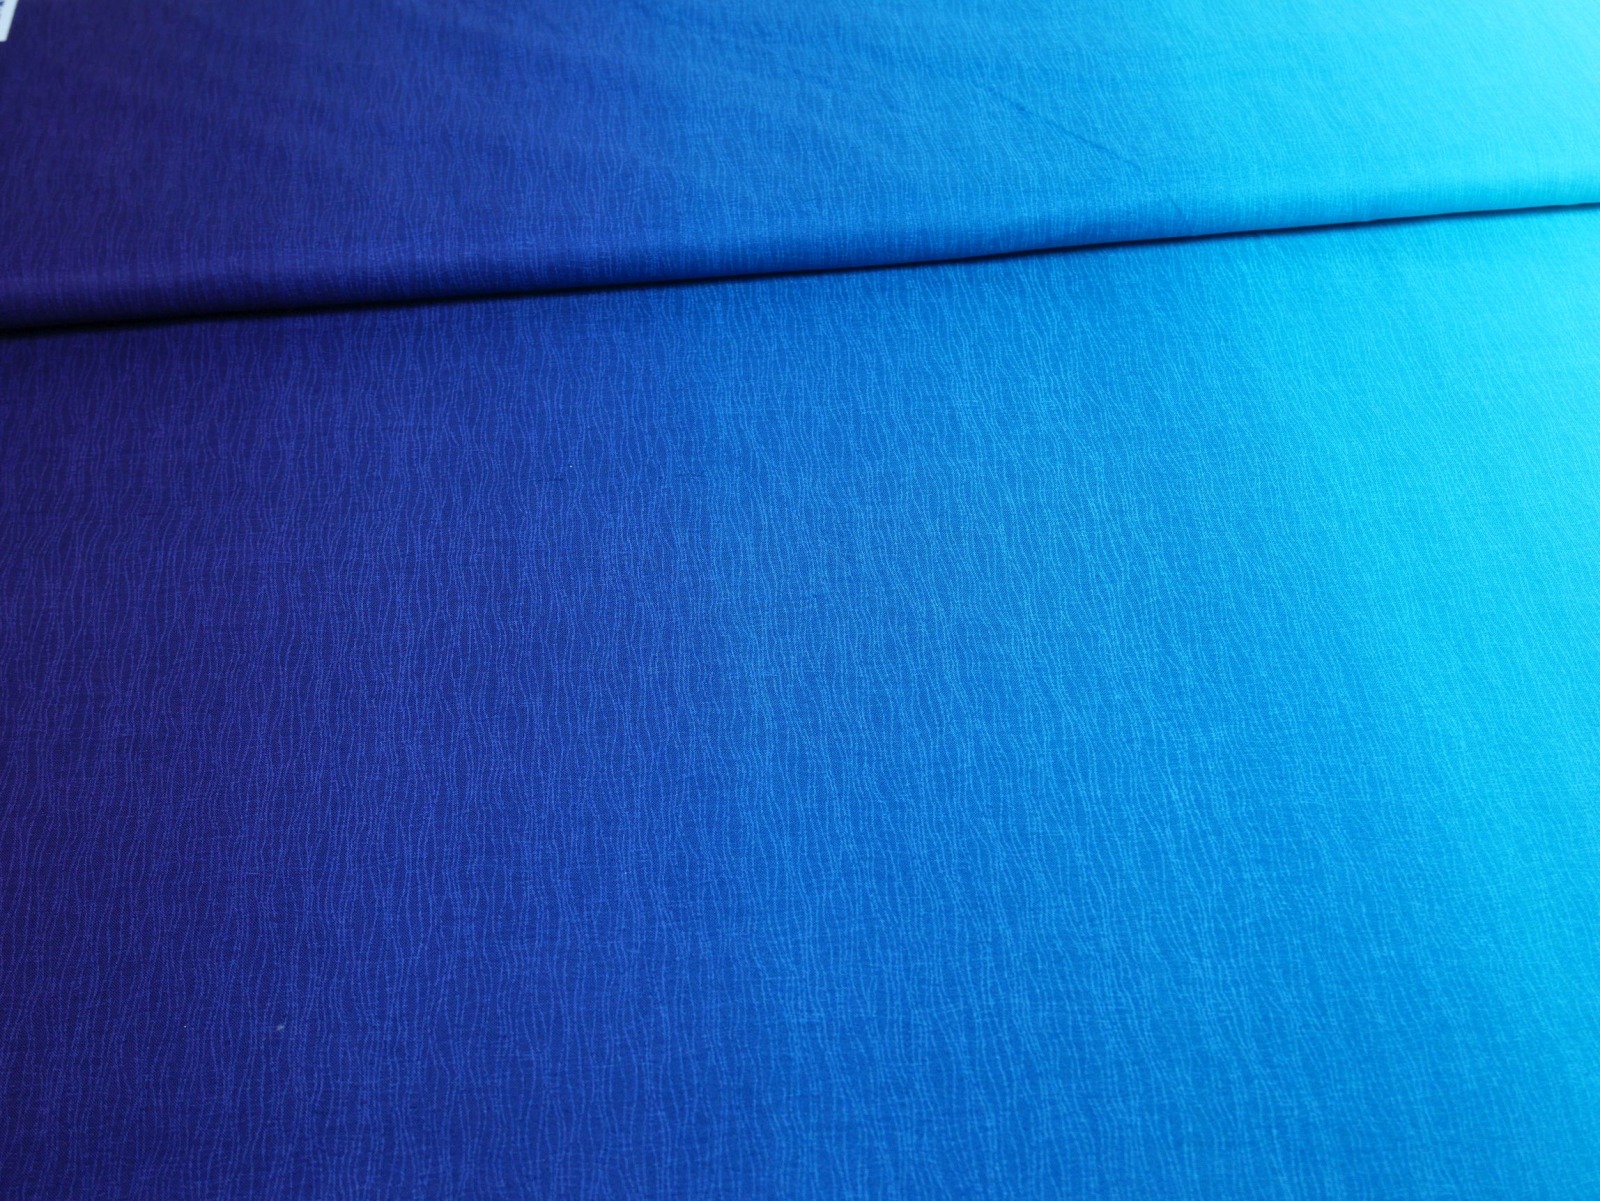 Baumwollstoff Ombre Farbverlauf blau türkis